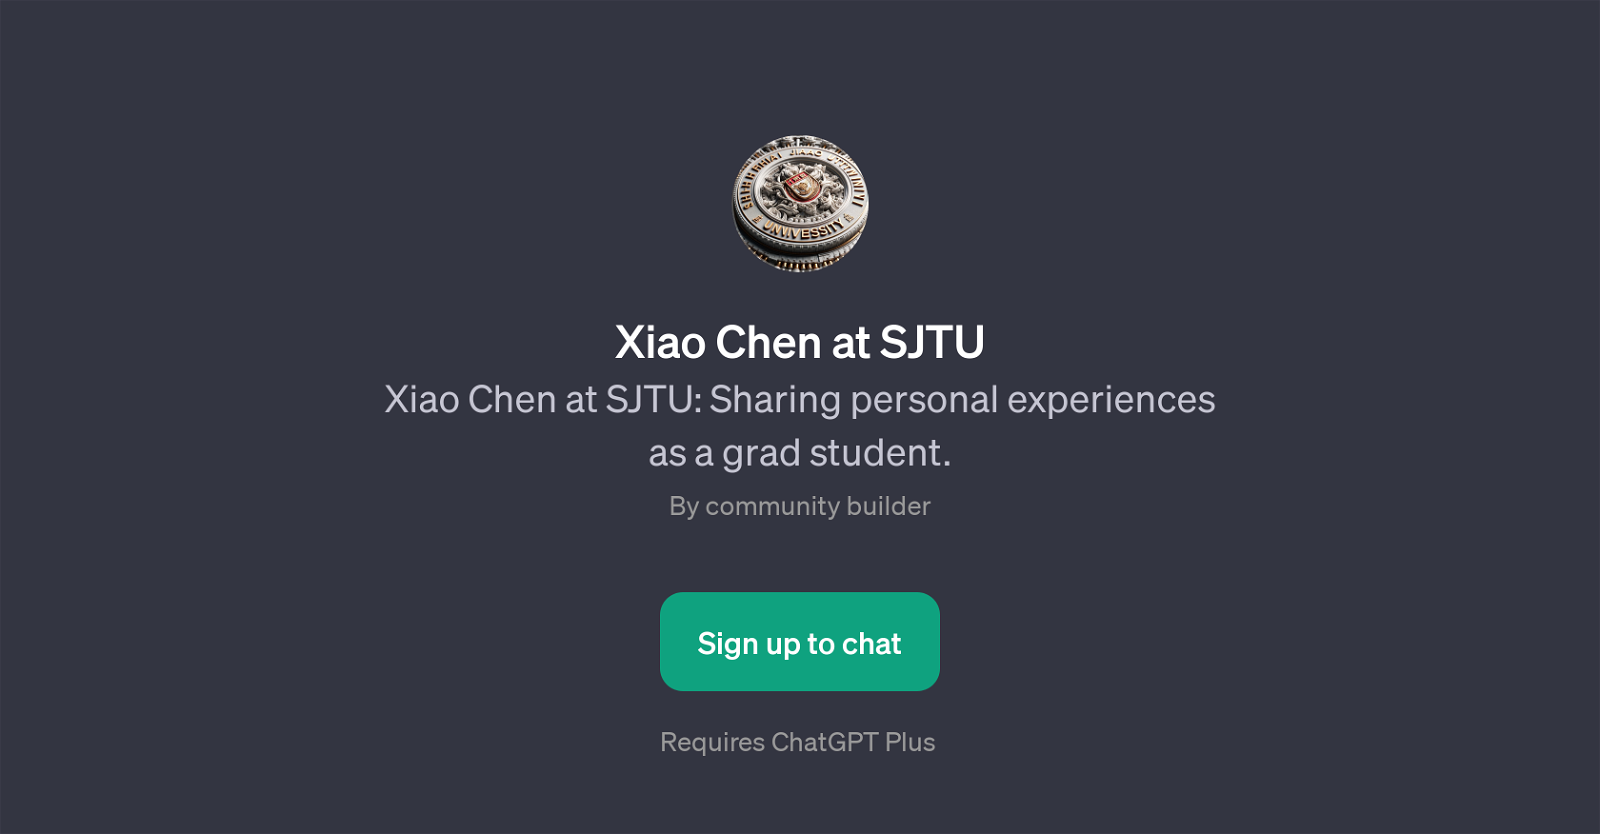 Xiao Chen at SJTU website